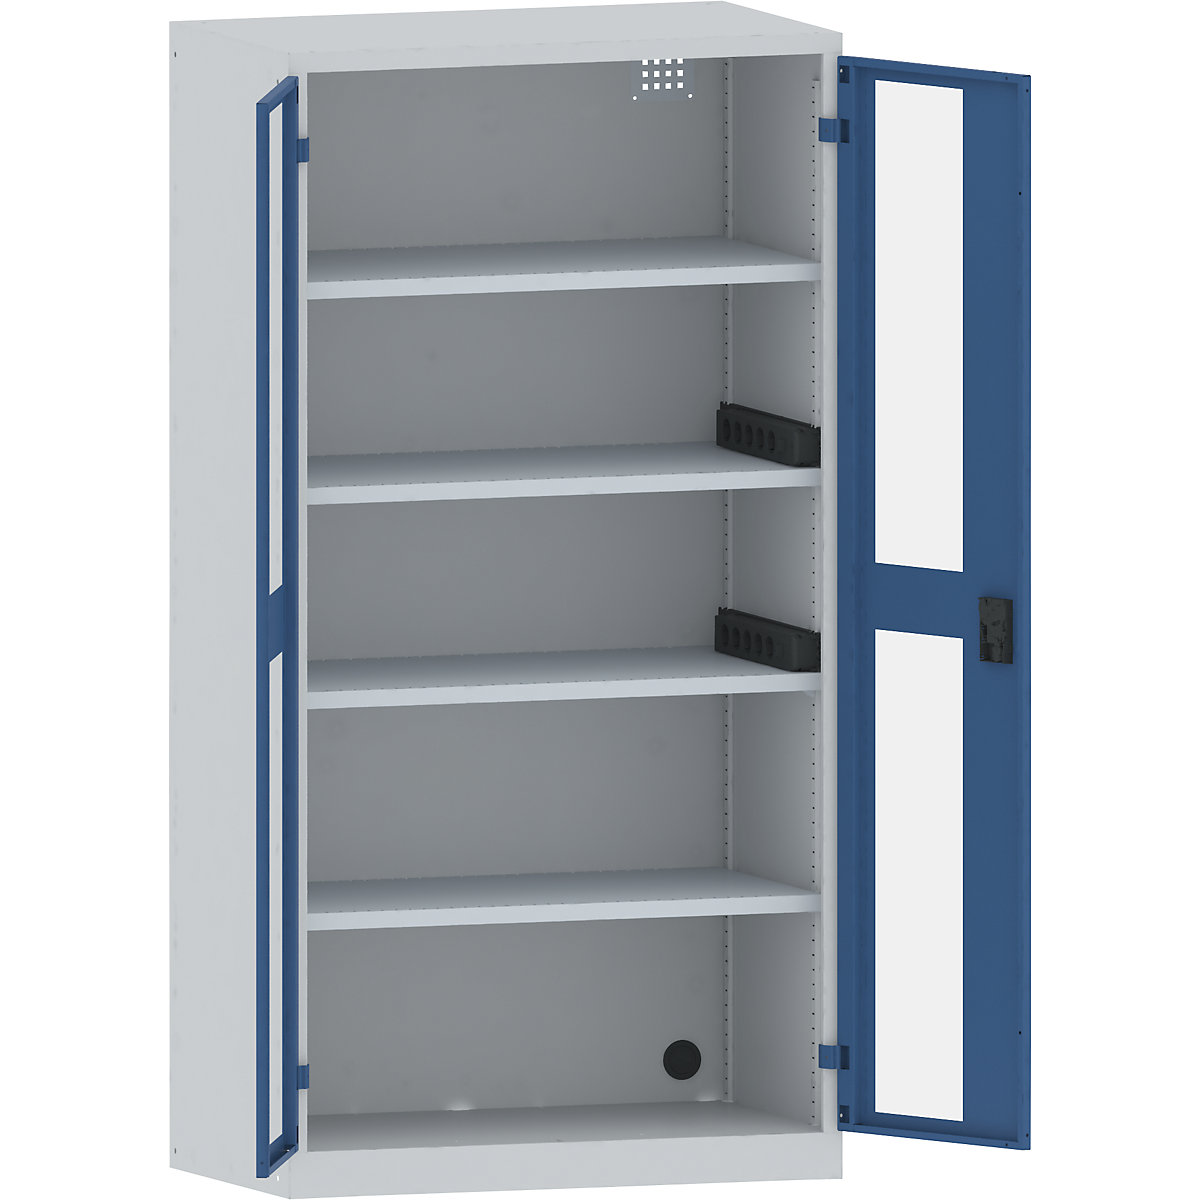 Accuoplaadkast met stroomvoorziening – LISTA, 4 legborden, deuren met zichtvenster, 2 contactdooslijsten op de zijkant, grijs/blauw-36